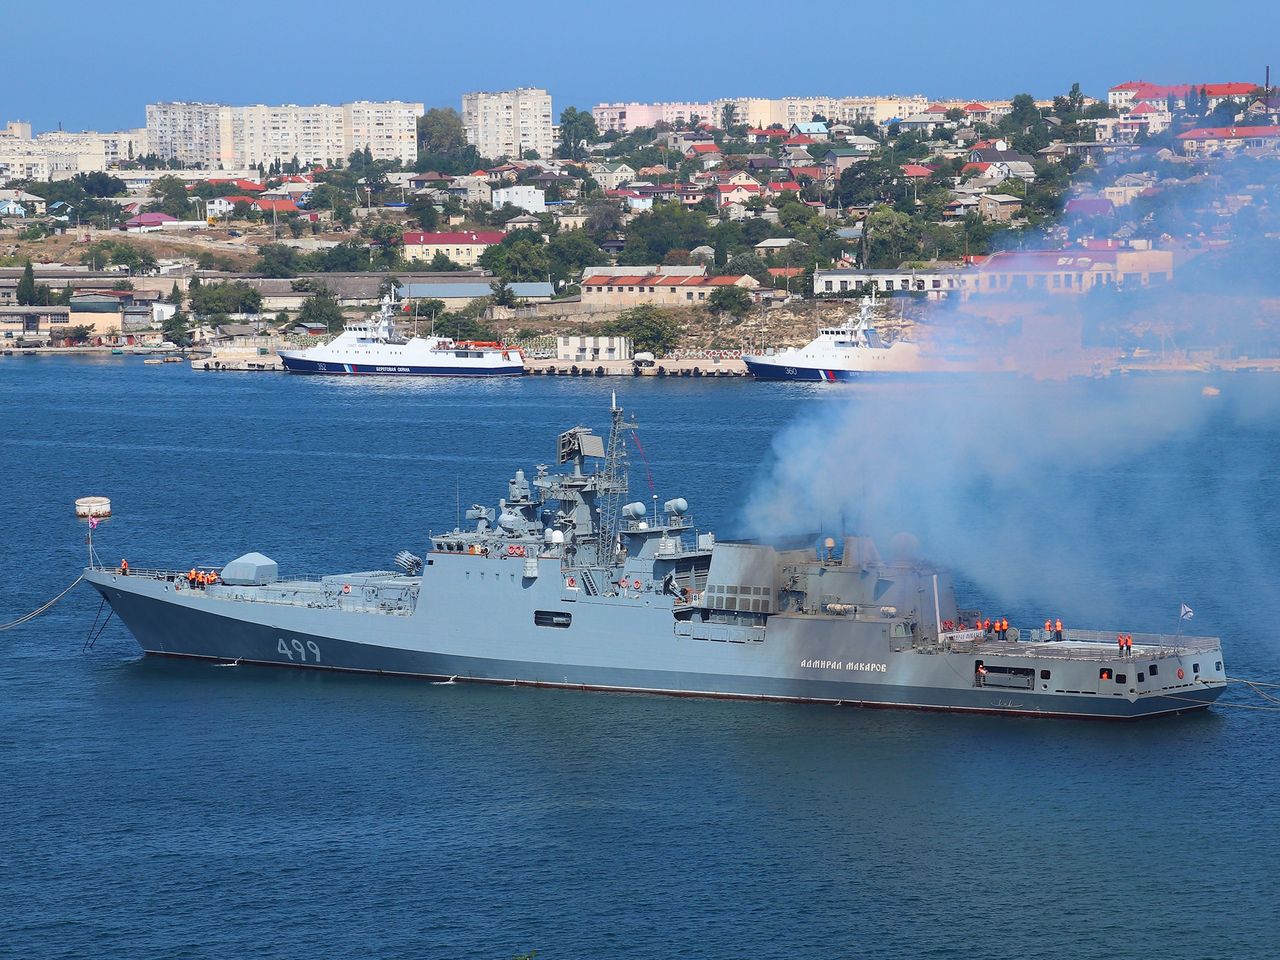 Ukraina zaatakowała fregatę Admirał Makarow — wyjaśniamy czym jest